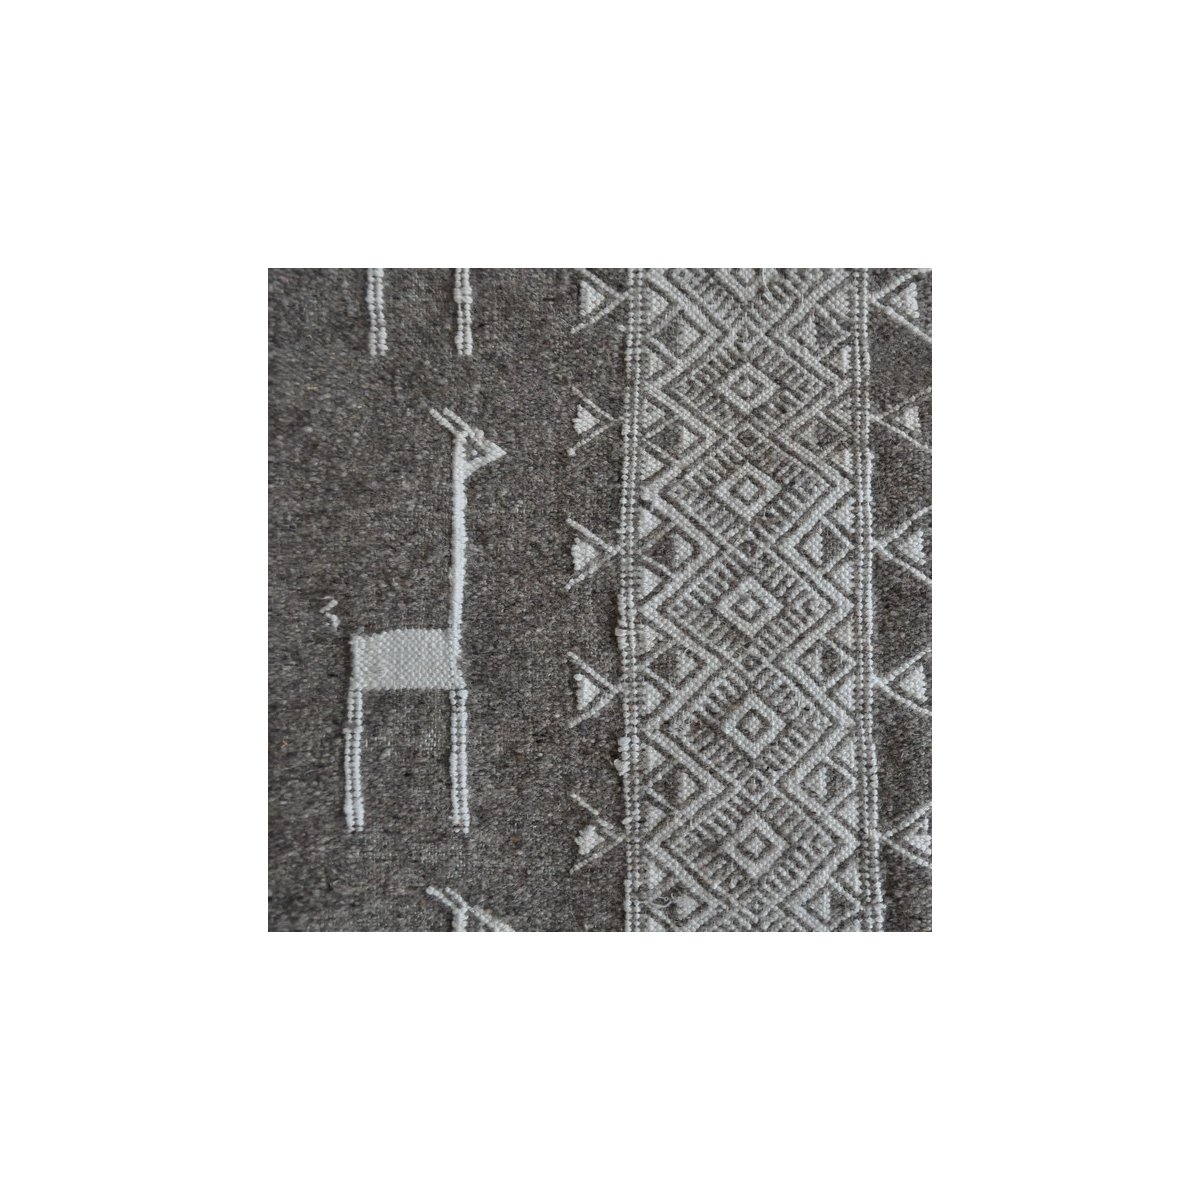 Berber Teppich Teppich Kelim Hassi Amor 130x190 Grau/Schwarz/Weiß (Handgewebt, Wolle) Tunesischer Kelim-Teppich im marokkanische